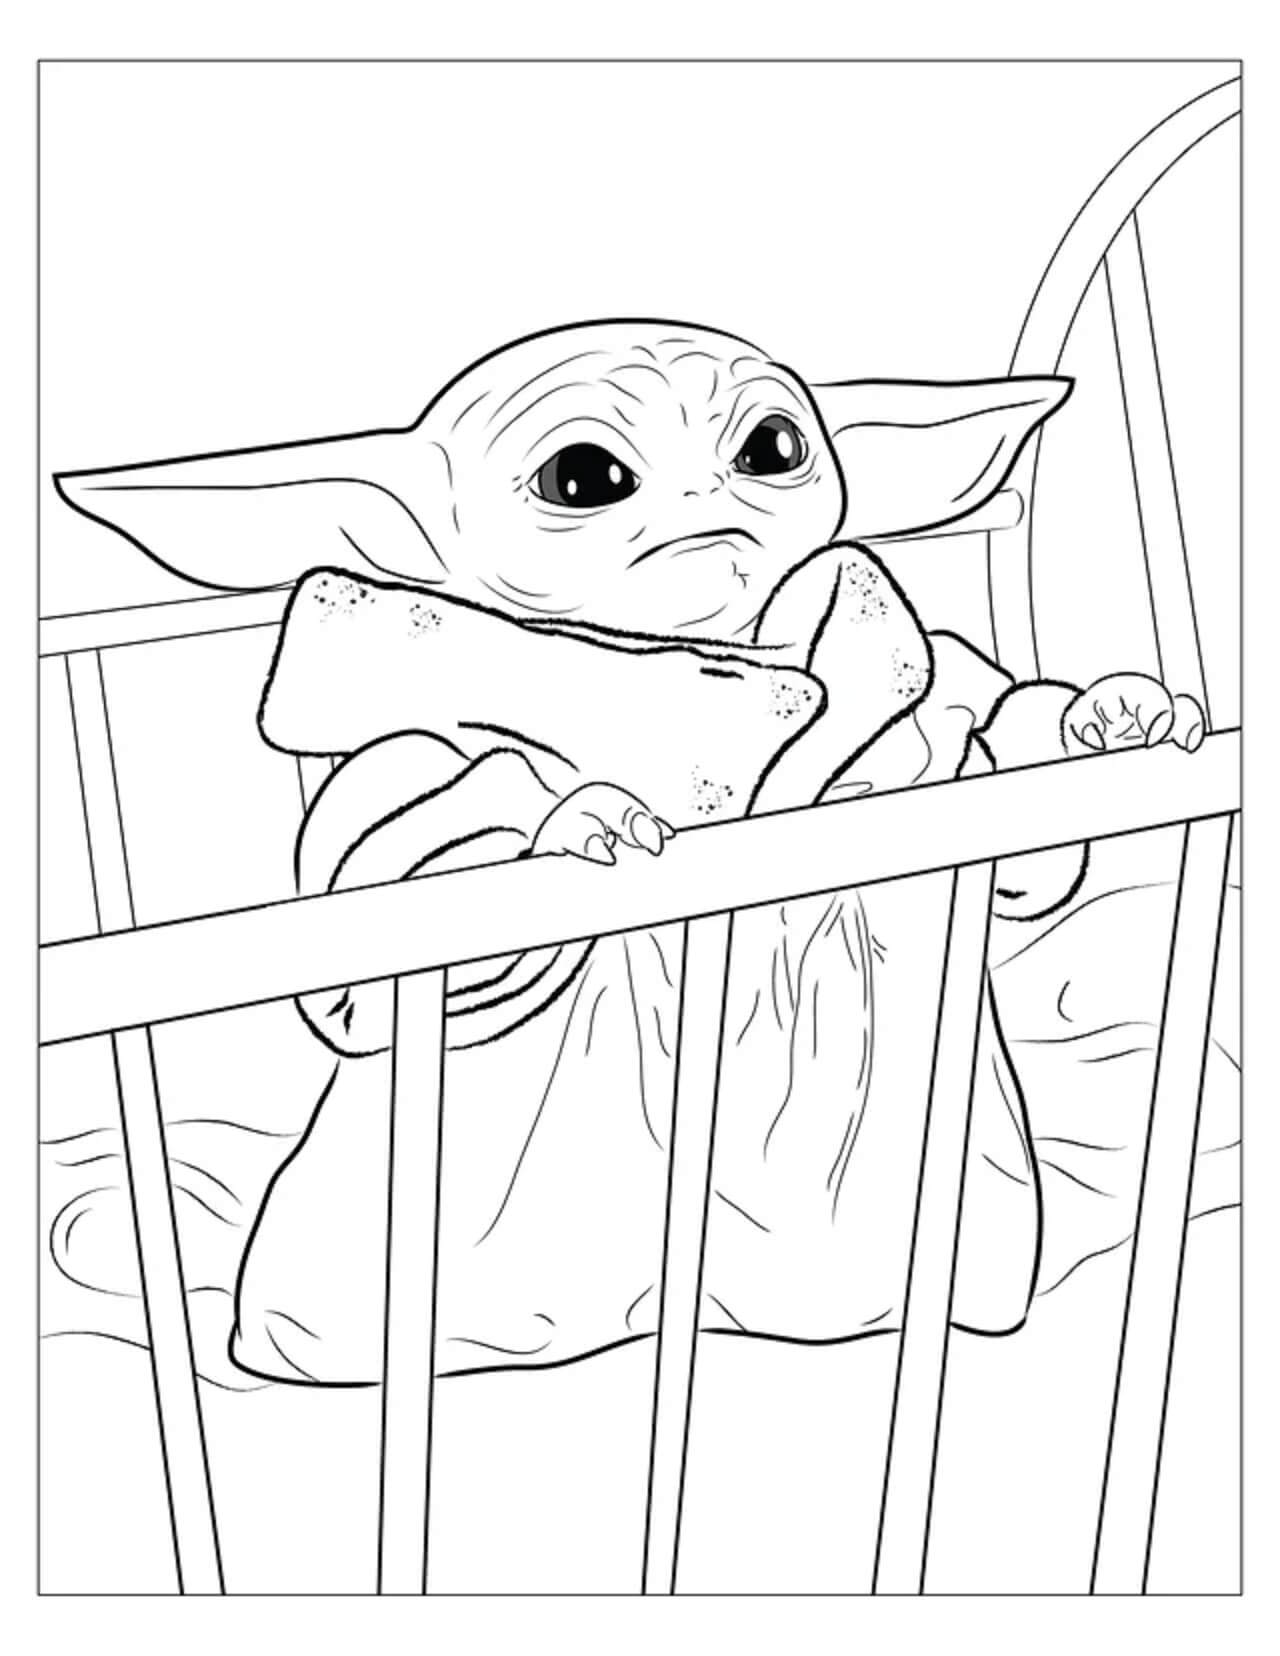 Baby Yoda i vuggen fargelegging